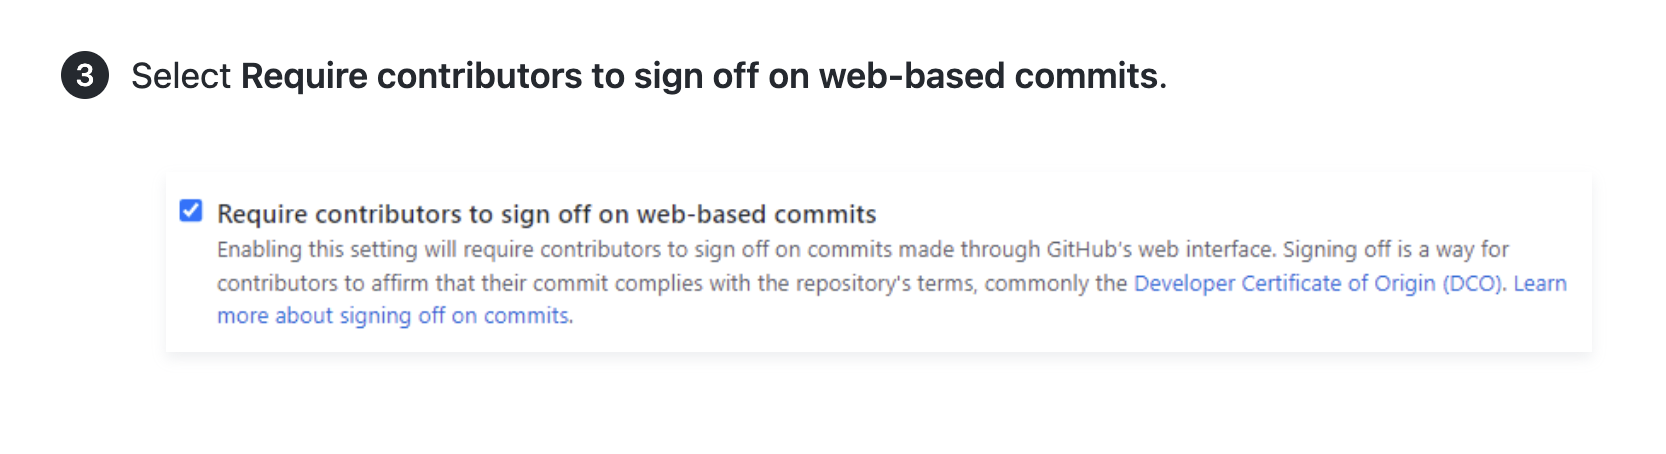 Capture d’écran d’un article qui montre des instructions et une capture d’écran d’IU obligeant les contributeurs à se déconnecter des commits web.